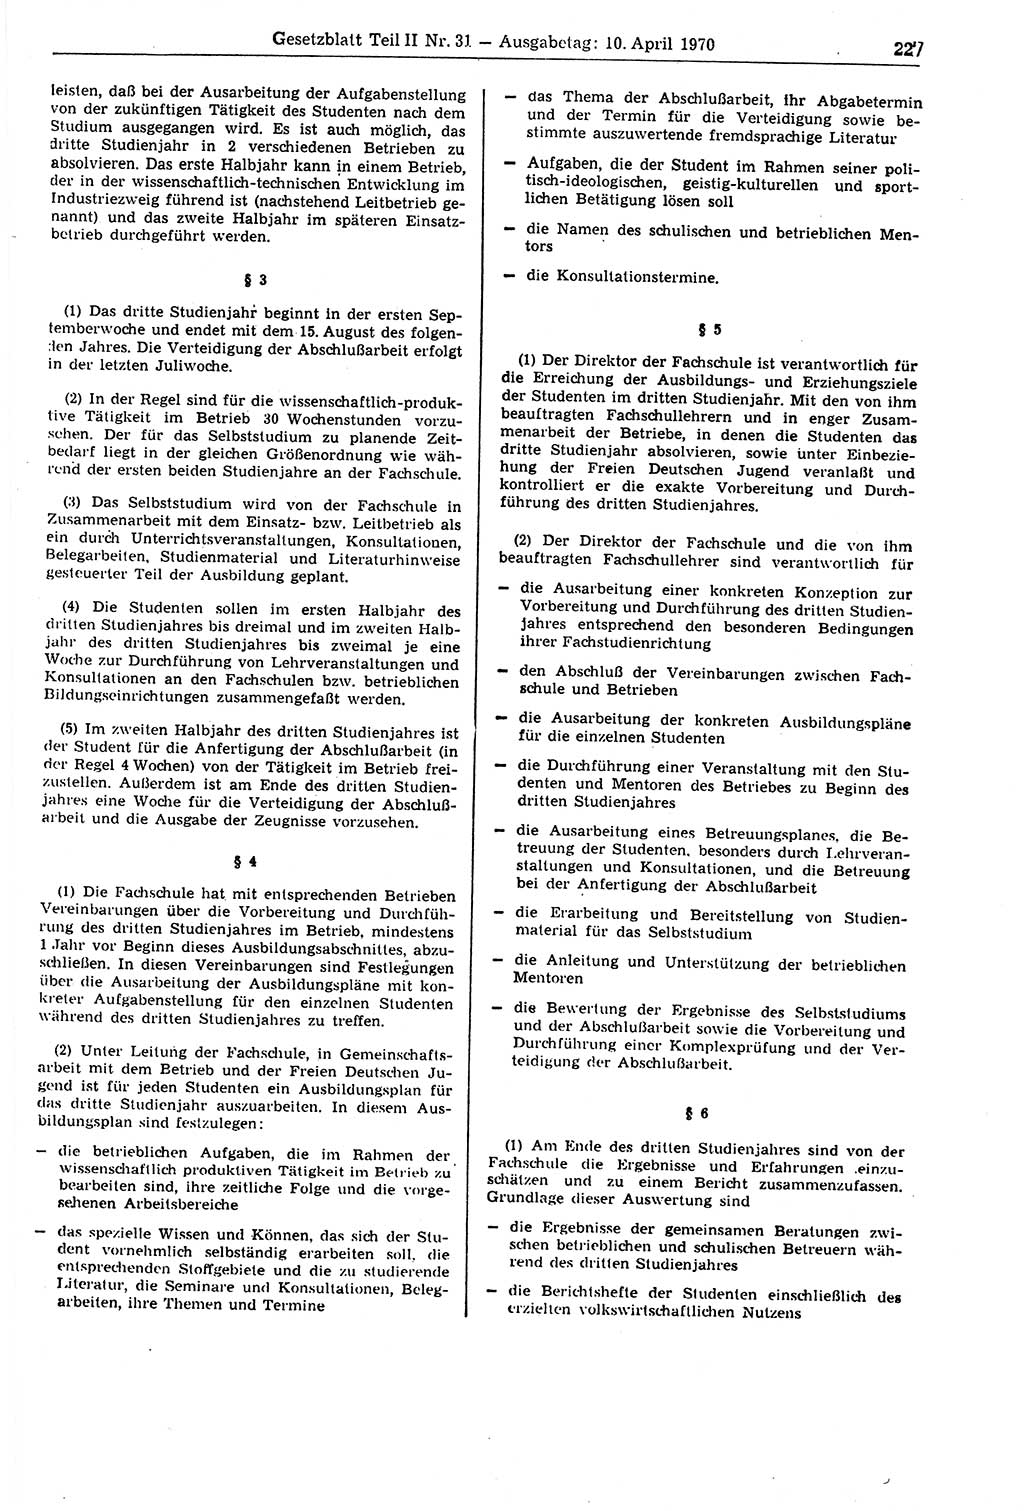 Gesetzblatt (GBl.) der Deutschen Demokratischen Republik (DDR) Teil ⅠⅠ 1970, Seite 227 (GBl. DDR ⅠⅠ 1970, S. 227)